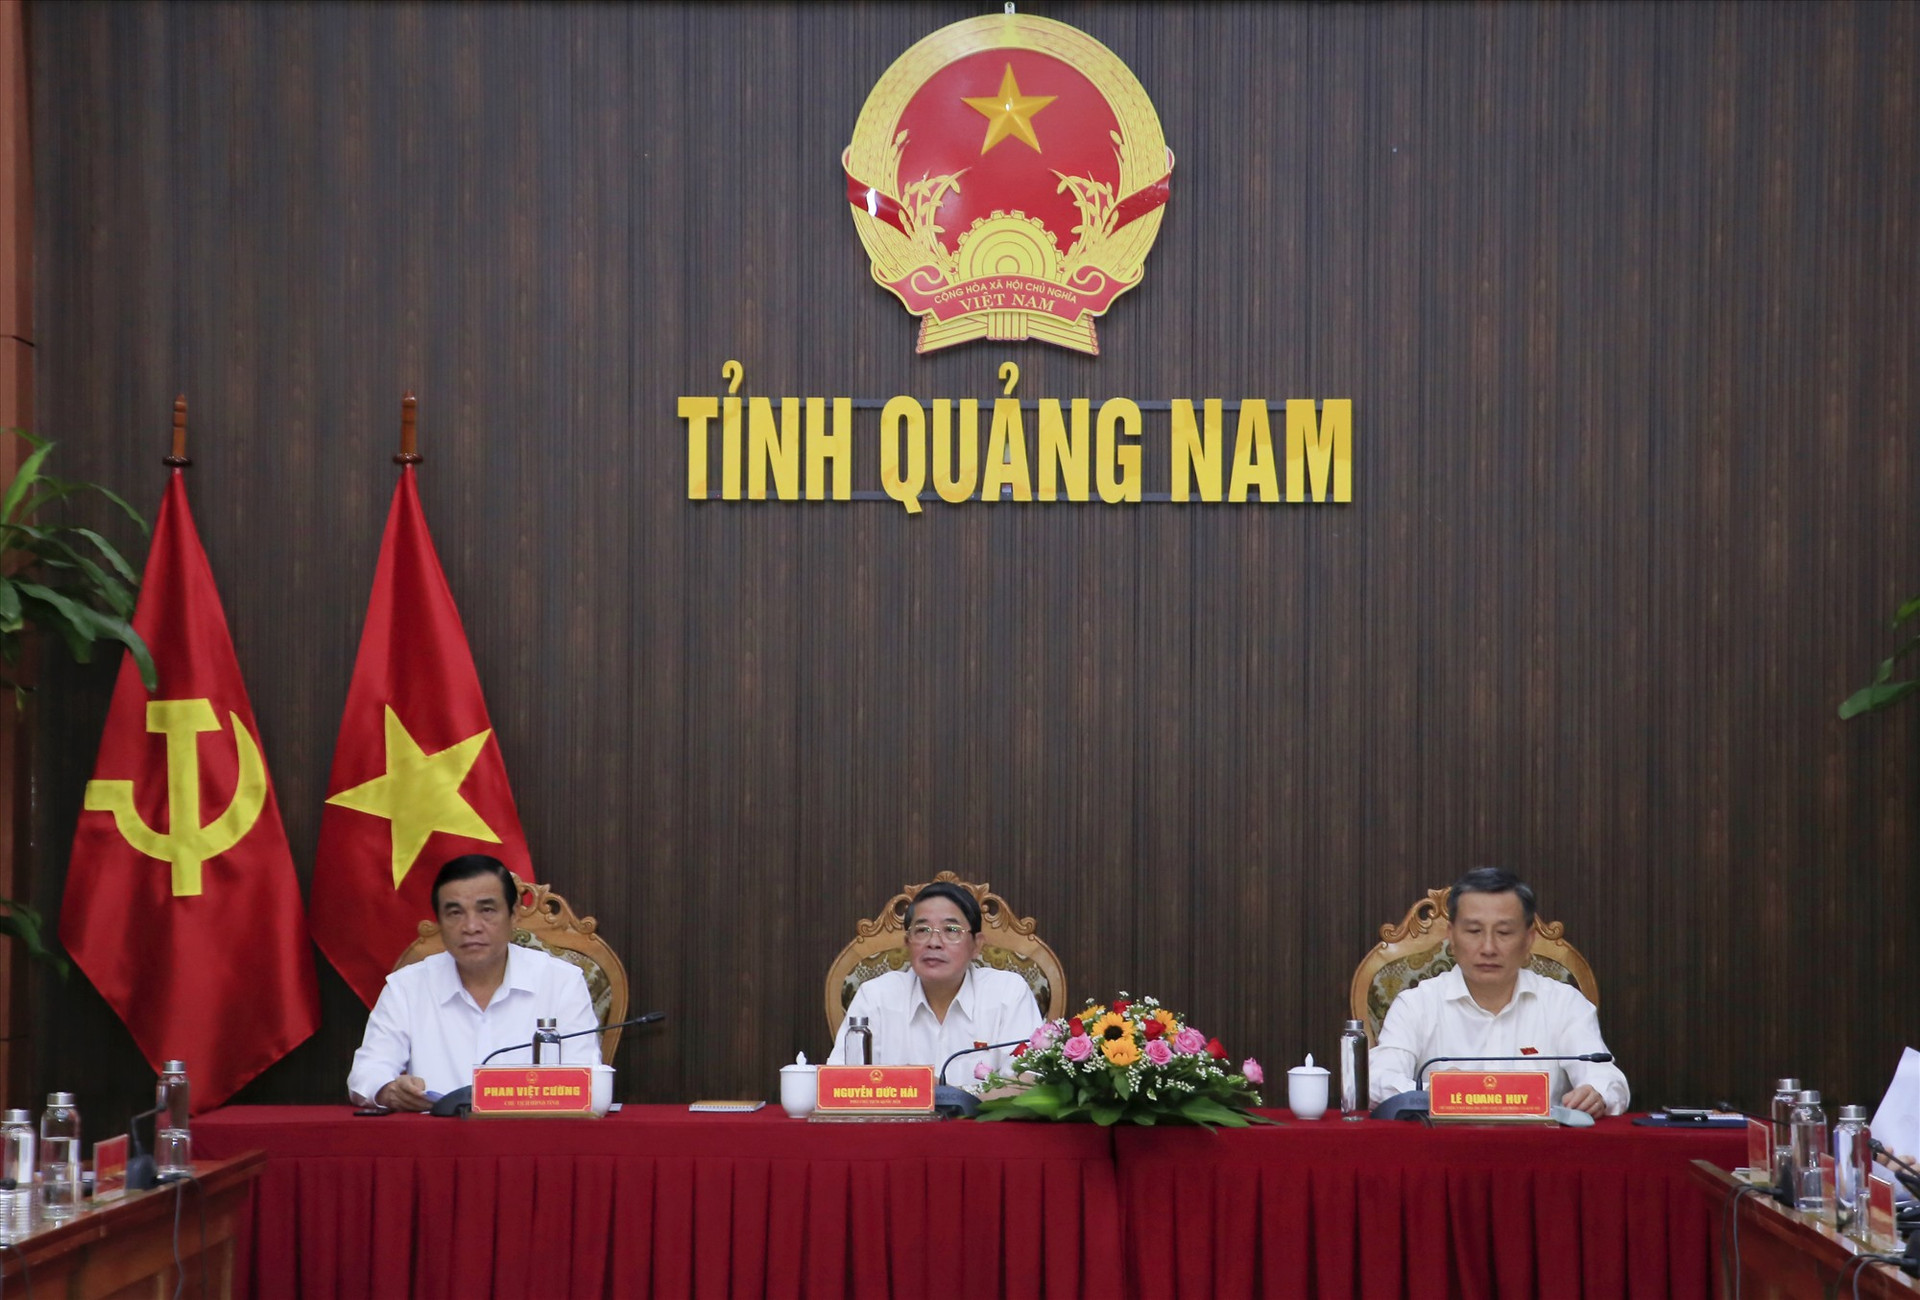 Đồng chí Nguyễn Đức Hải - Ủy viên BCH Trung ương Đảng, Phó Chủ tịch Quốc hội (giữa) đồng chủ trì buổi làm việc. Ảnh: T.C